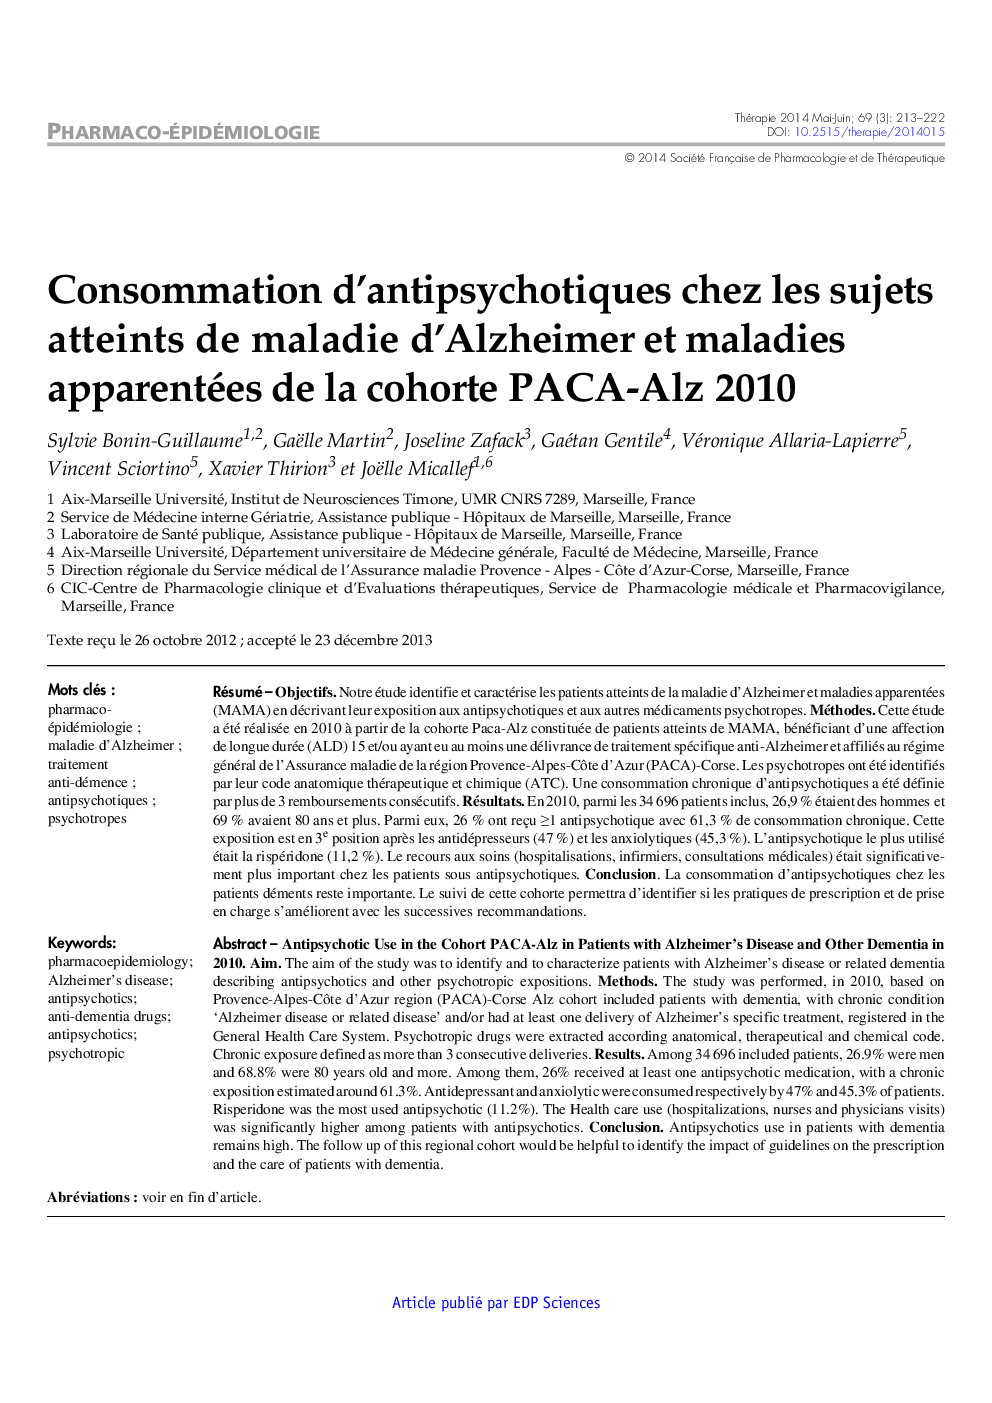 Consommation d'antipsychotiques chez les sujets atteints de maladie d'Alzheimer et maladies apparentées de la cohorte PACA-Alz 2010